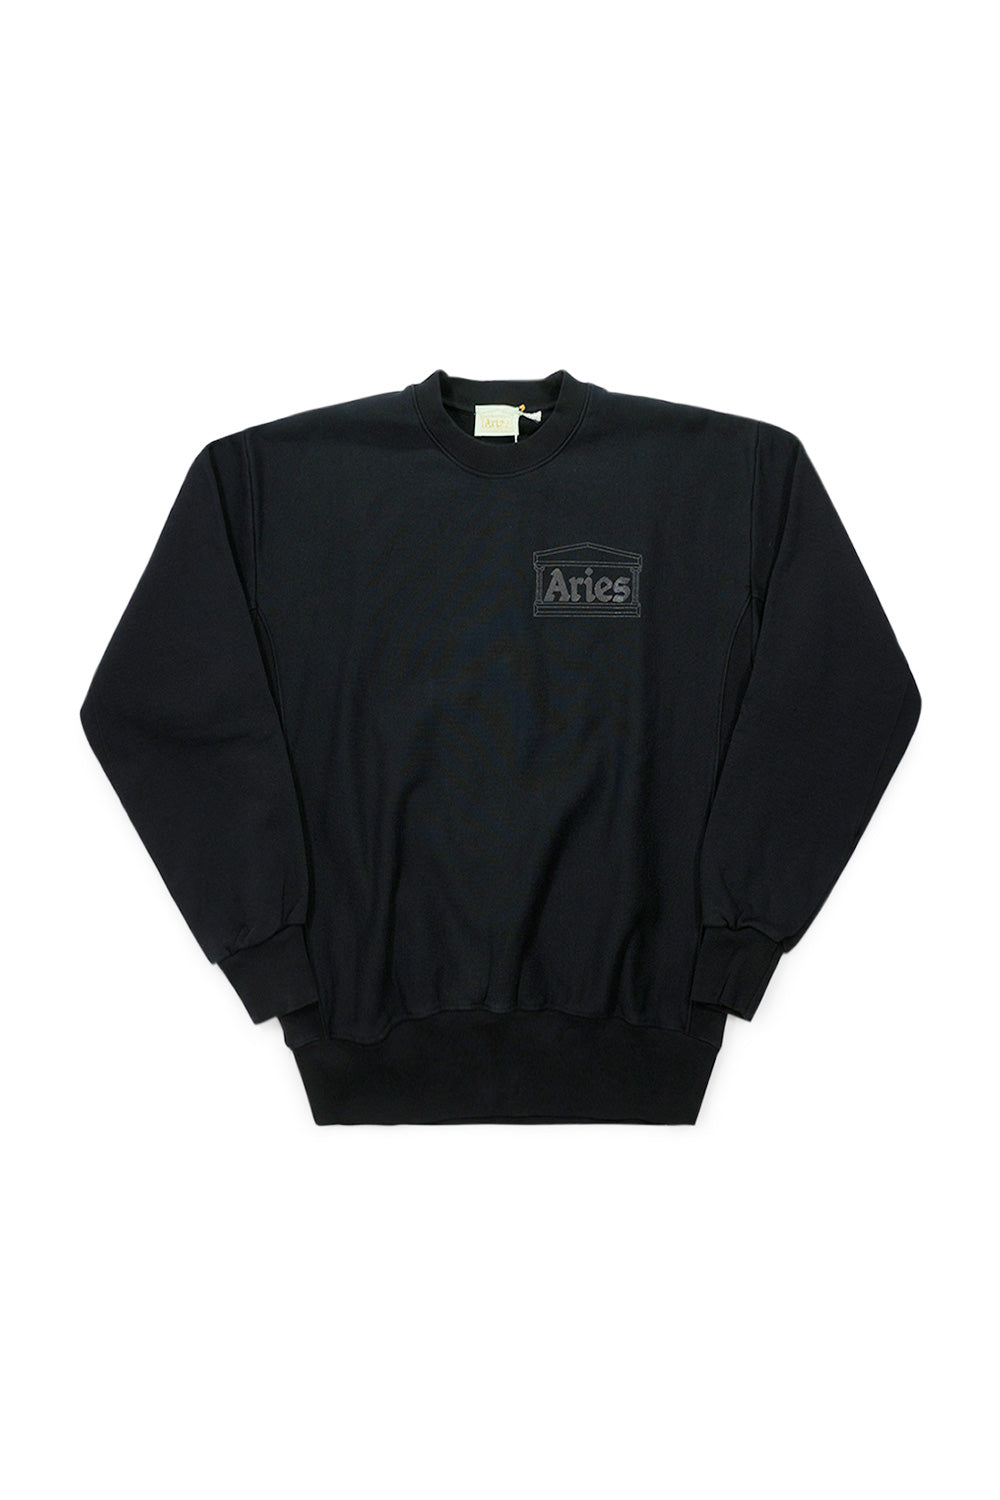 Aries Premium Temple Sweatshirt Black - BONKERS